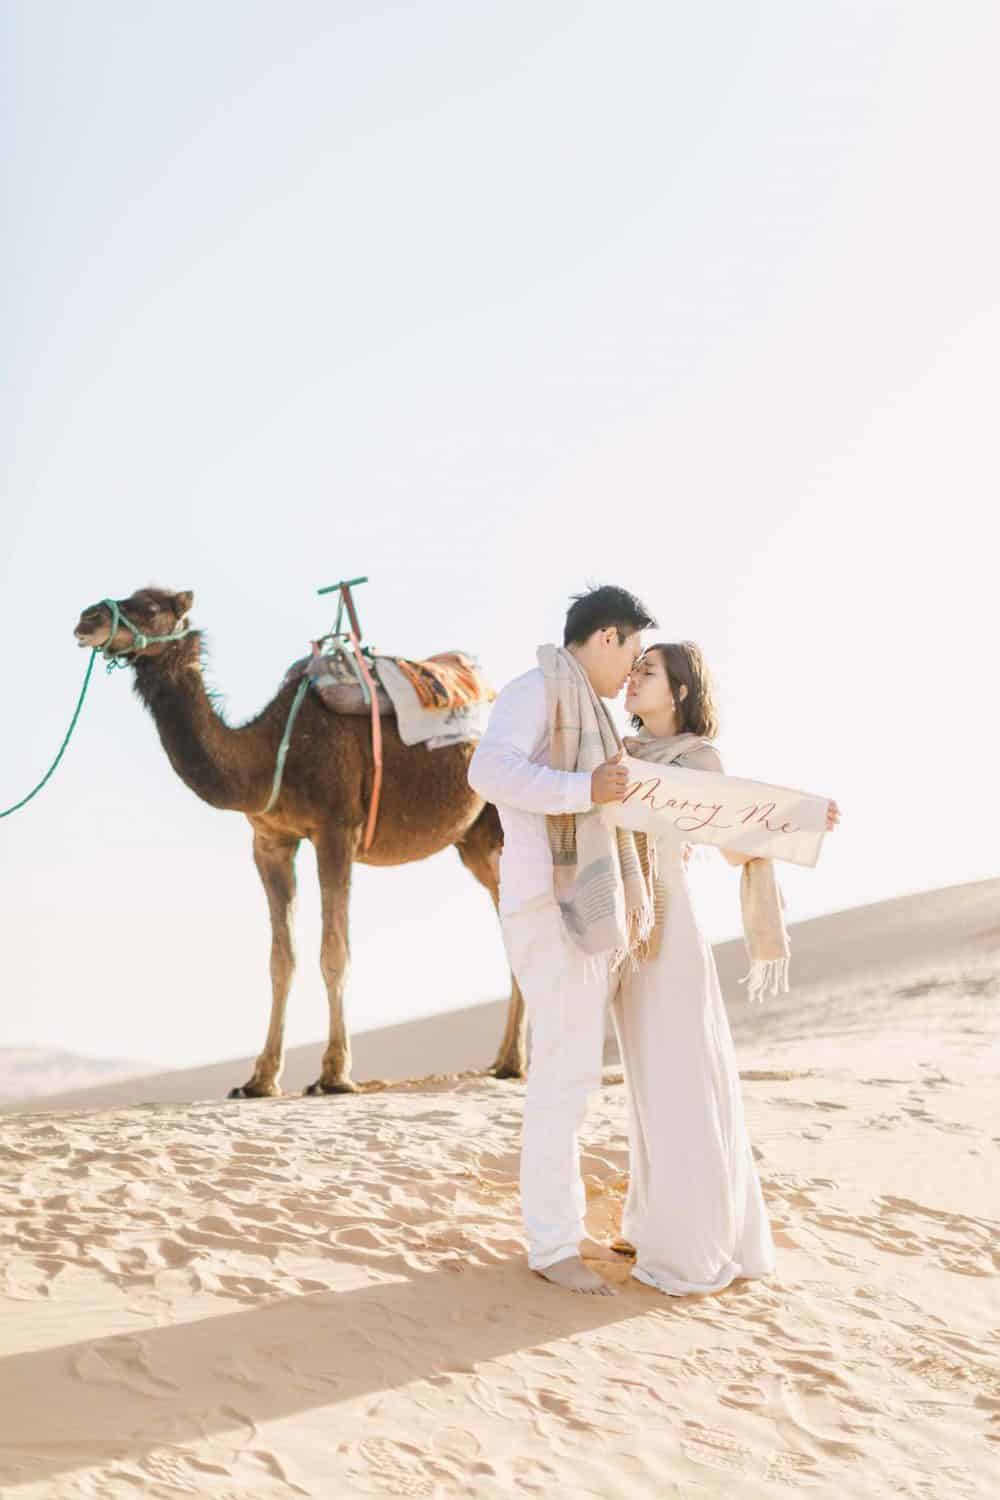 沙哈拉沙漠 海外婚紗 / ENGAGEMENT IN SAHARA / 摩洛哥婚紗